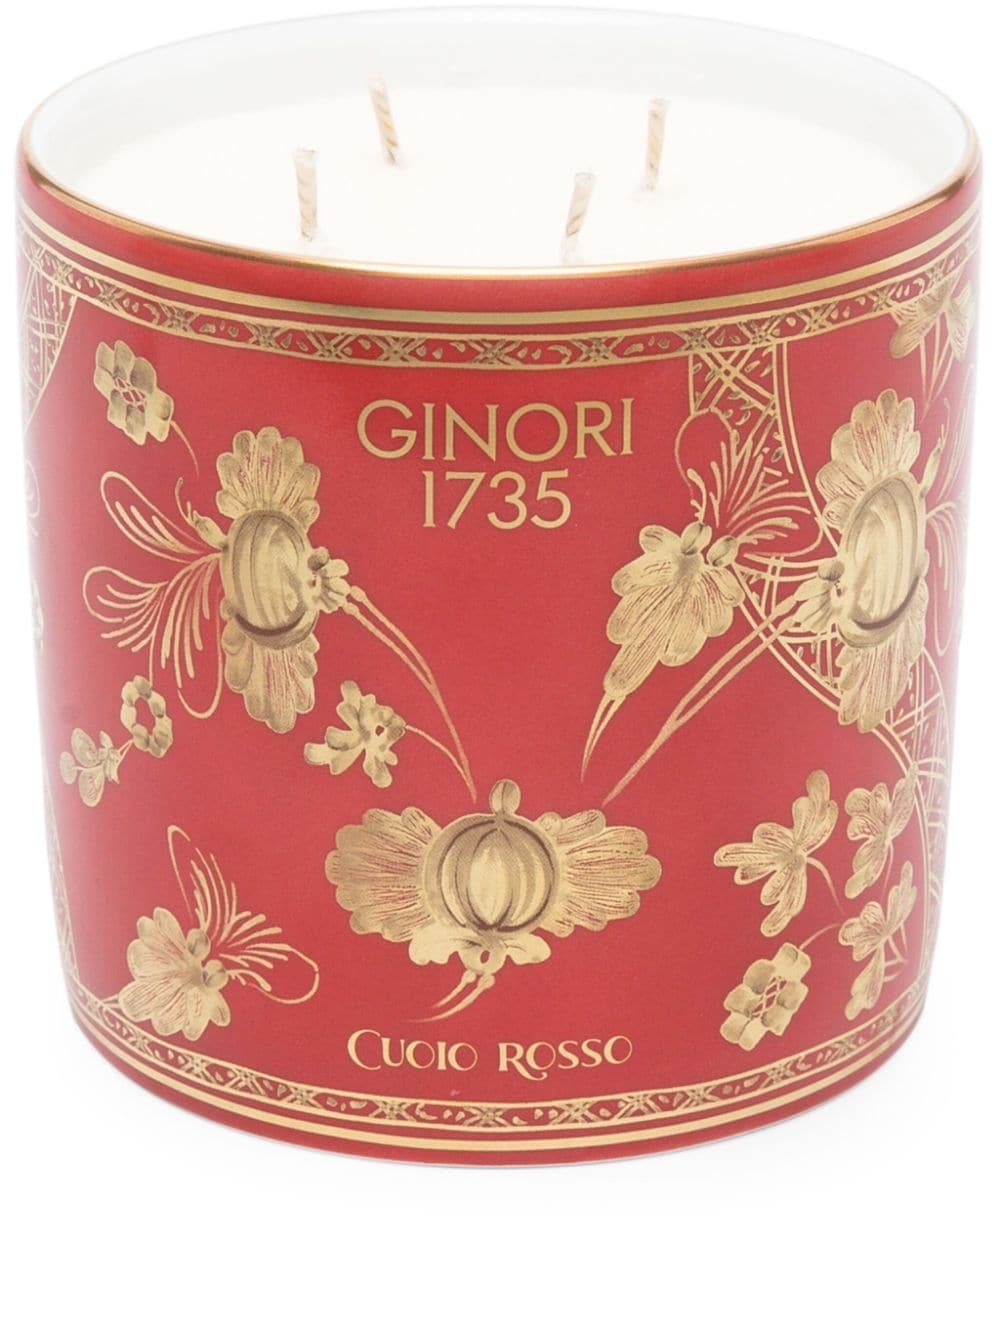 GINORI 1735 large porcelain scented candle (700g) - Red von GINORI 1735